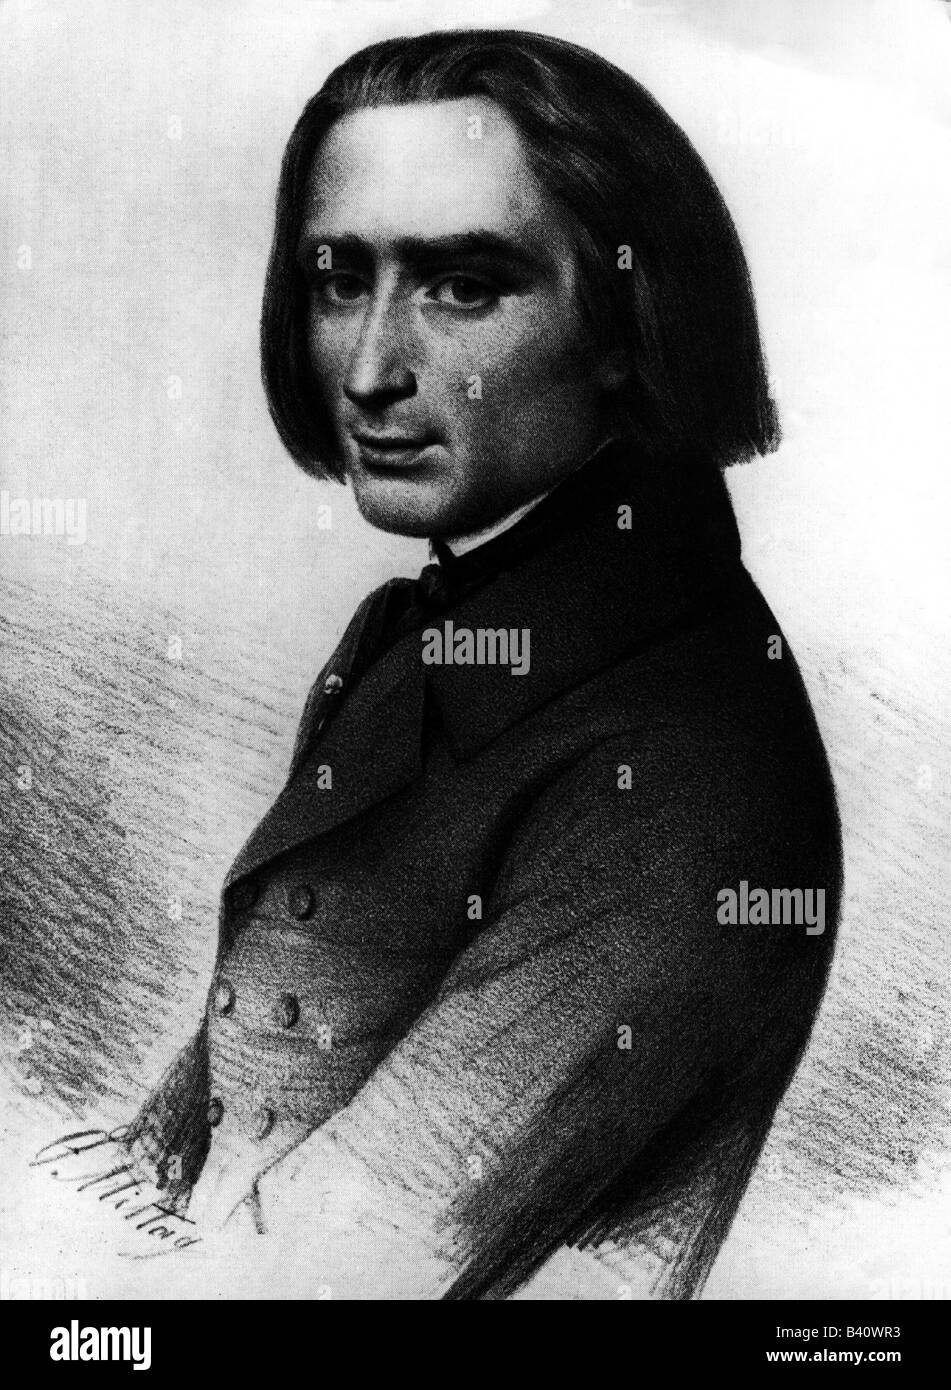 Liszt, Franz, 22.10.1811 - 31.7.1886, compositeur et pianiste hongrois, mi-longueur, dessin de S. Mittag, vers 1845, Banque D'Images